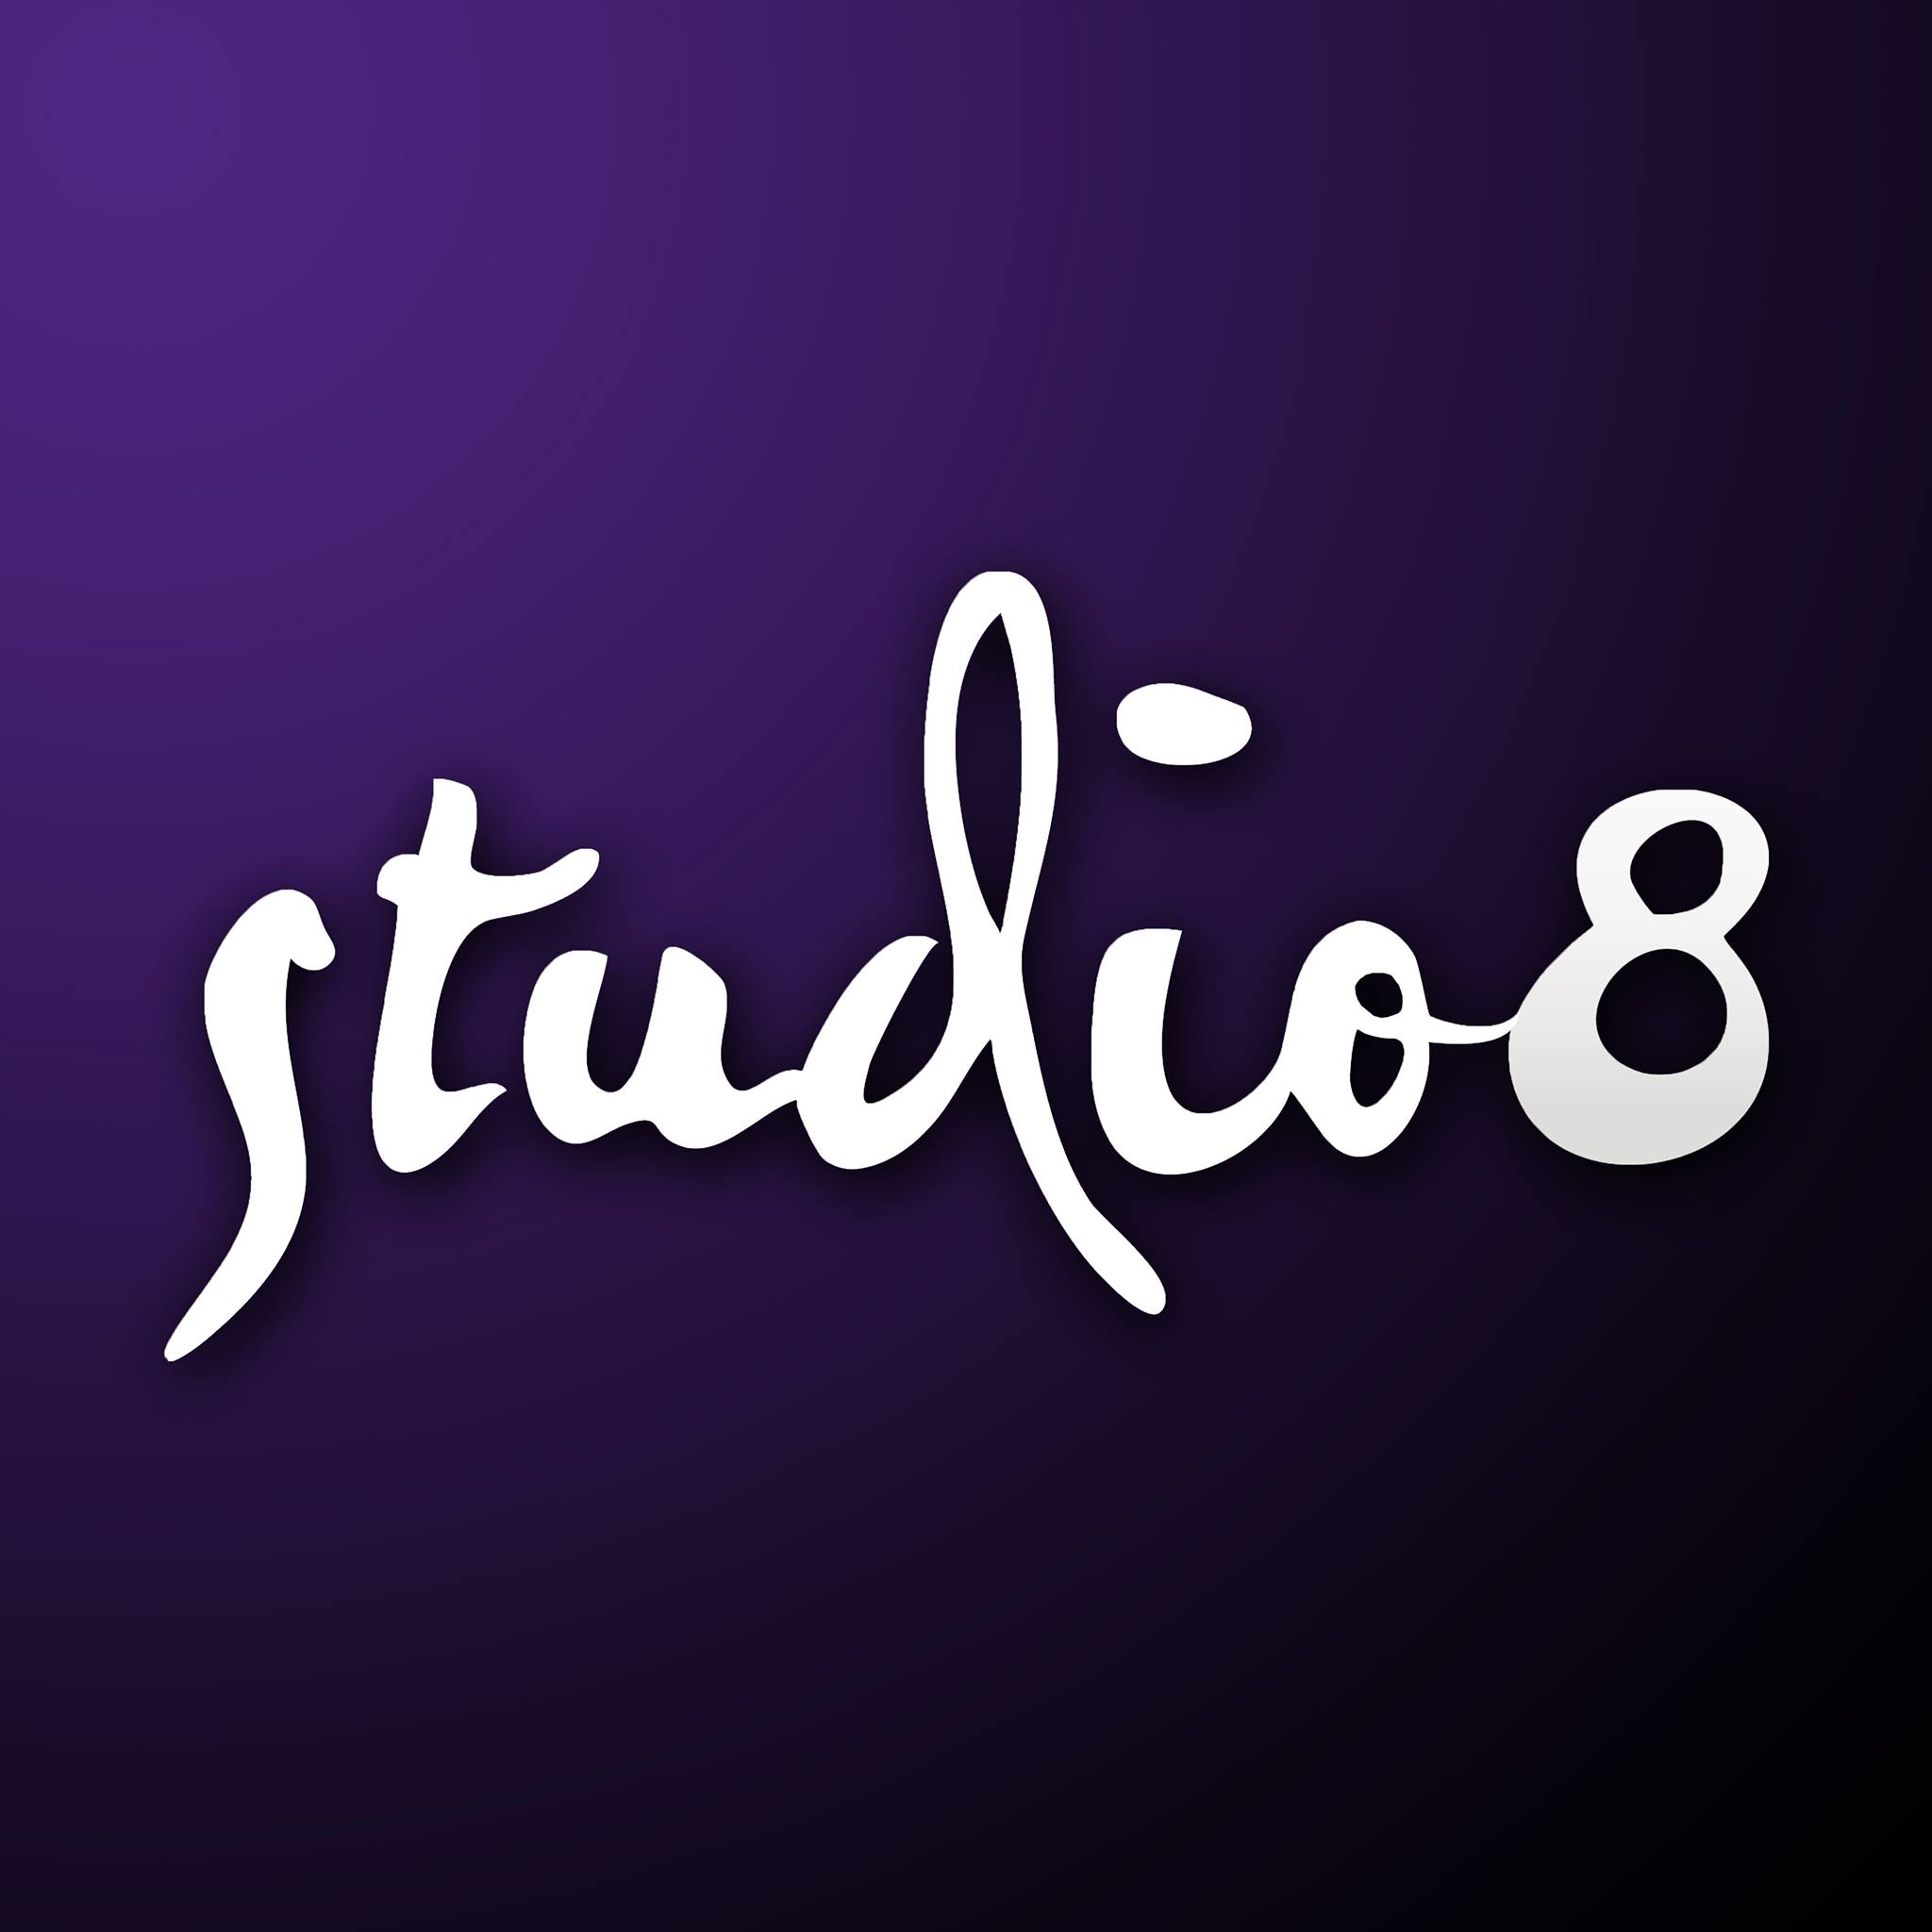 Studio8